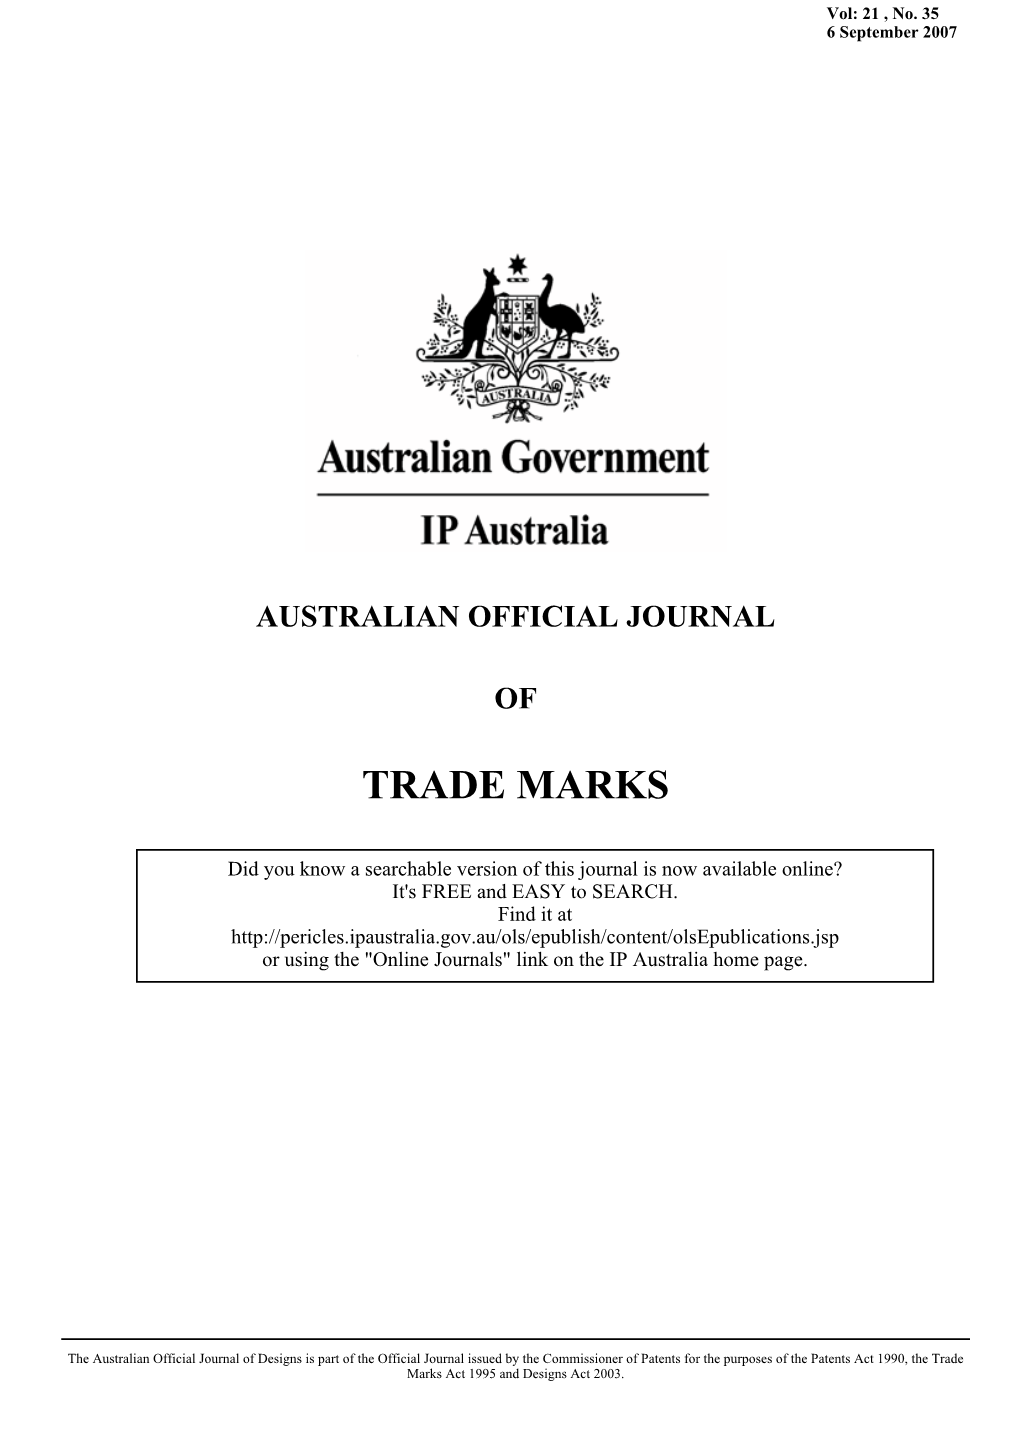 AUSTRALIAN OFFICIAL JOURNAL of TRADE MARKS 6 September 2007